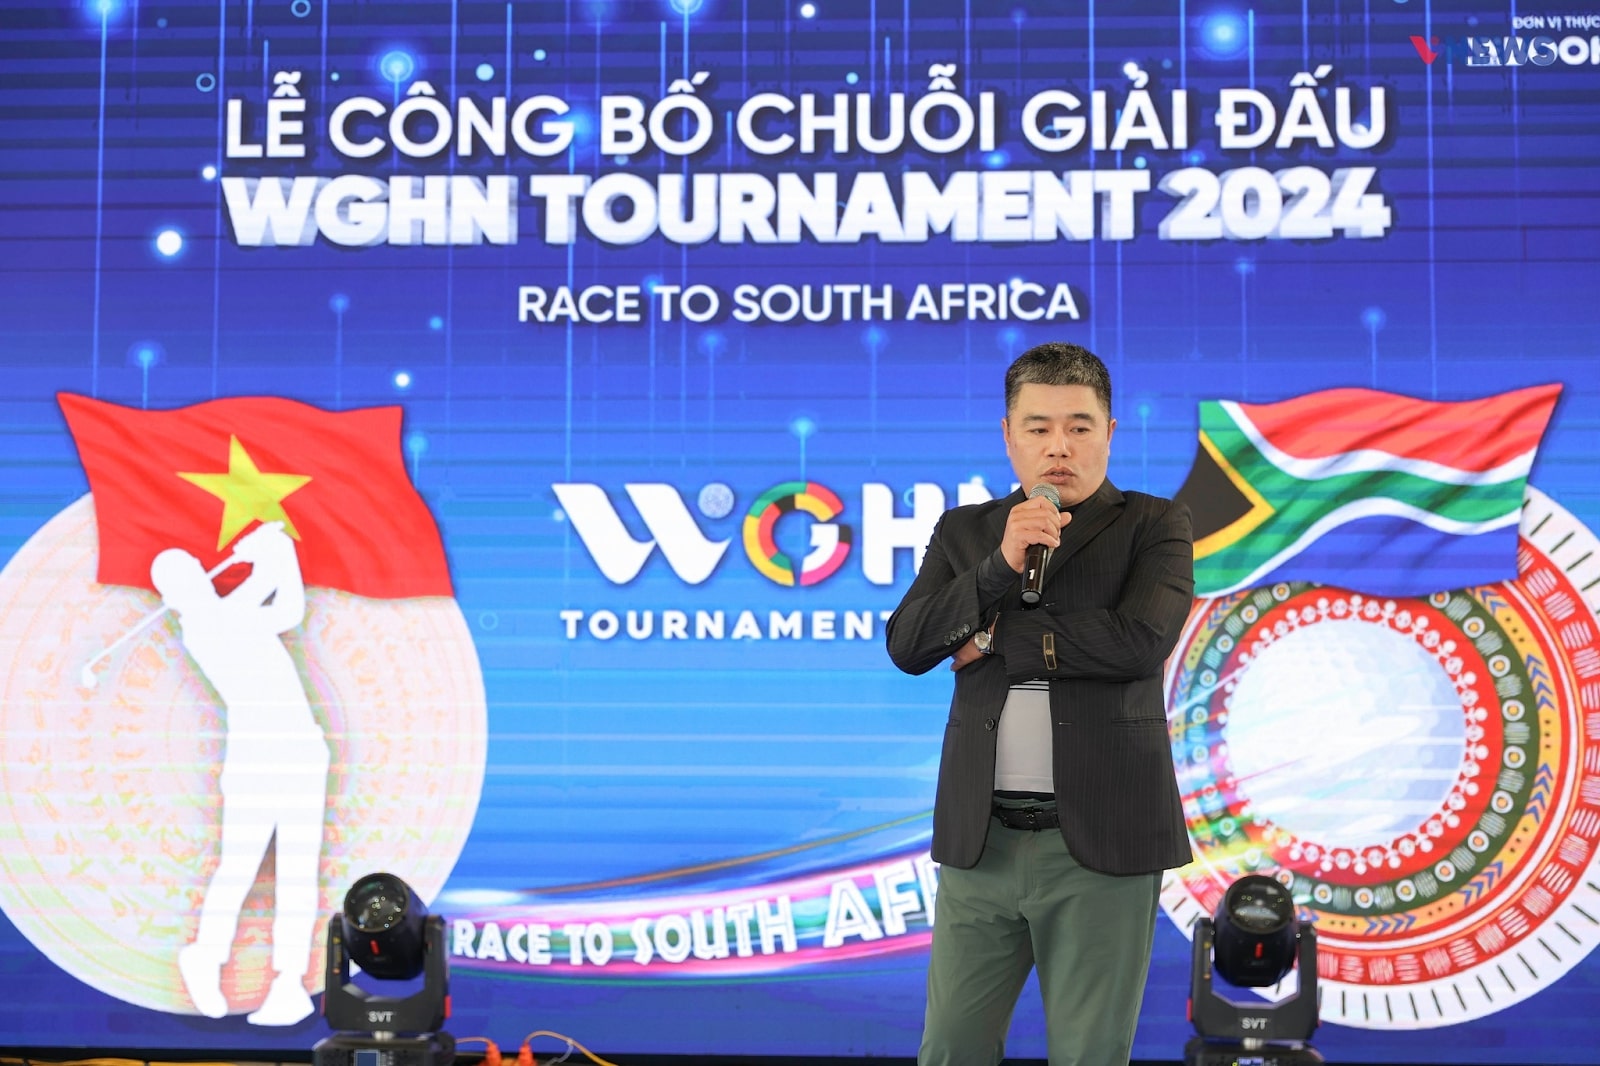 VGolf Travel tự hào là ban tổ chức của chuỗi giải WGHN Tournament Race to South Africa 2024